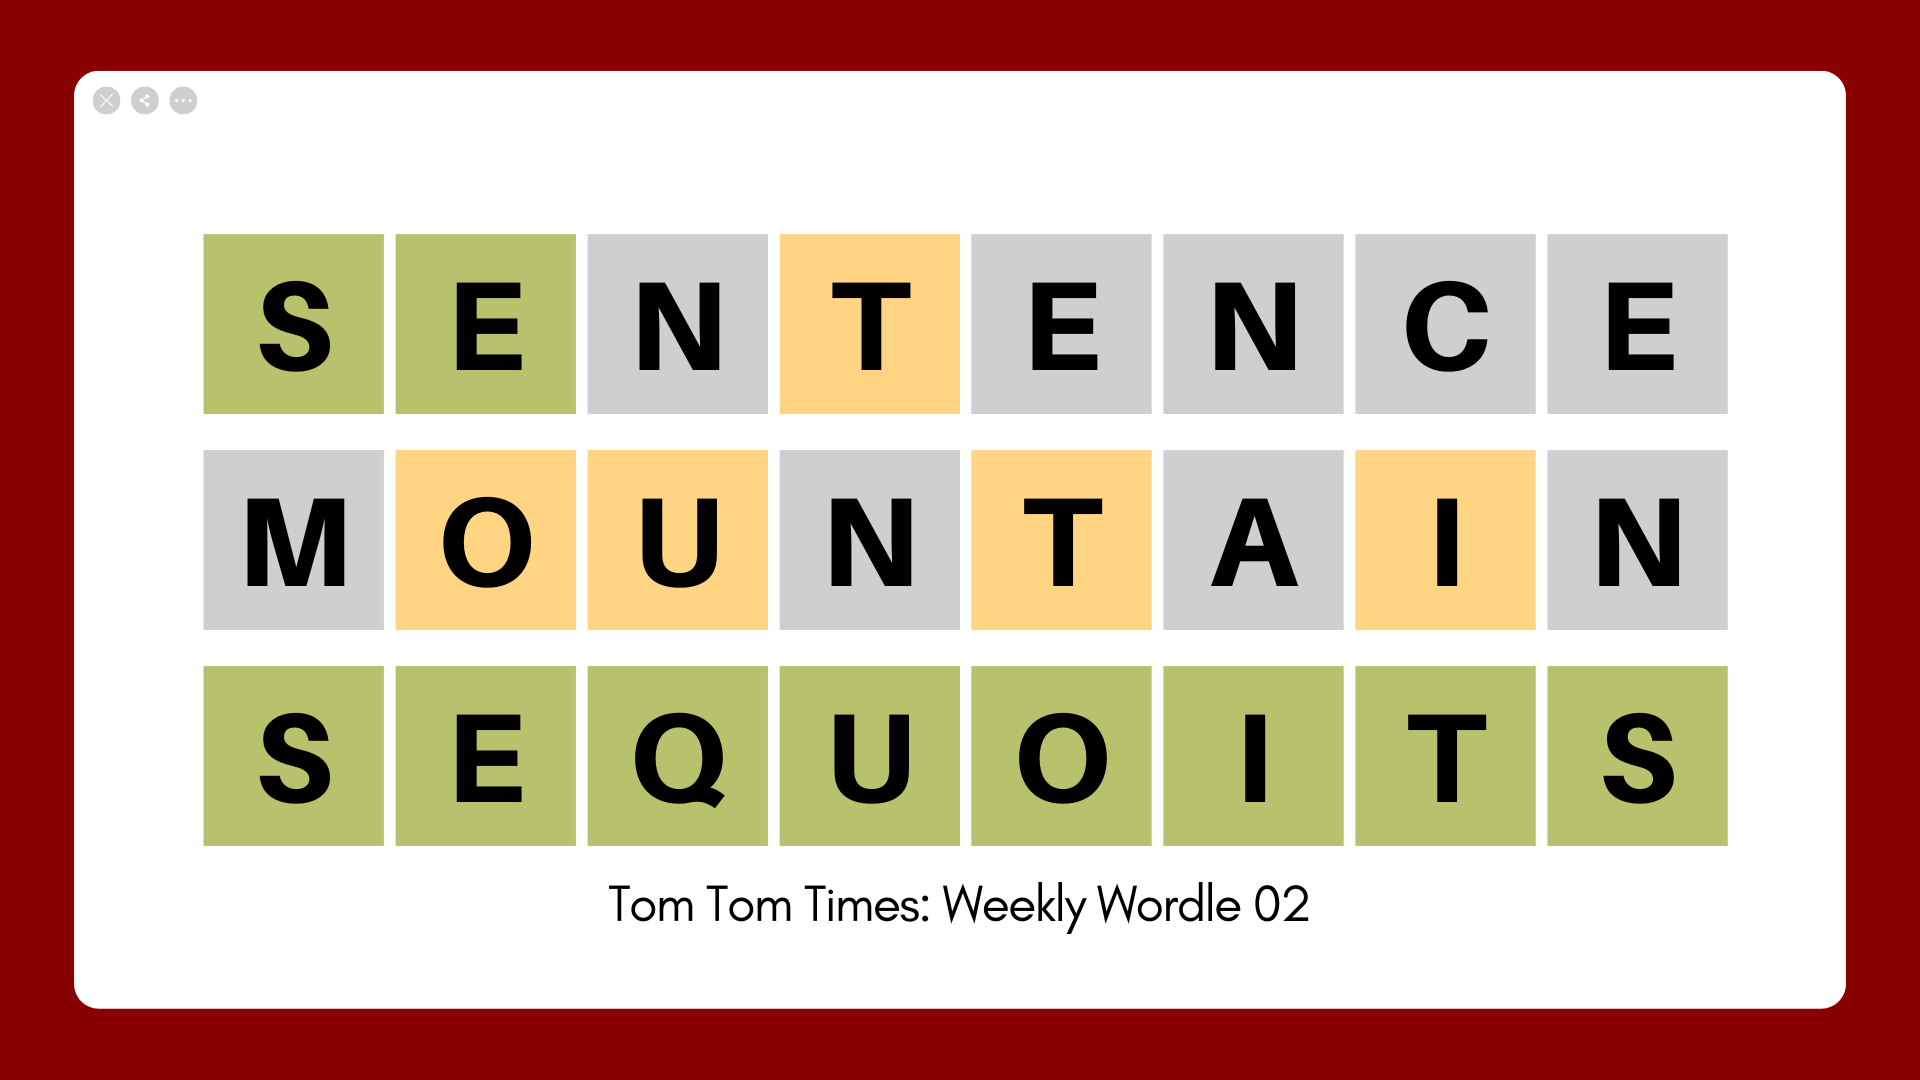 Tom Tom Times: Weekly Wordle 02